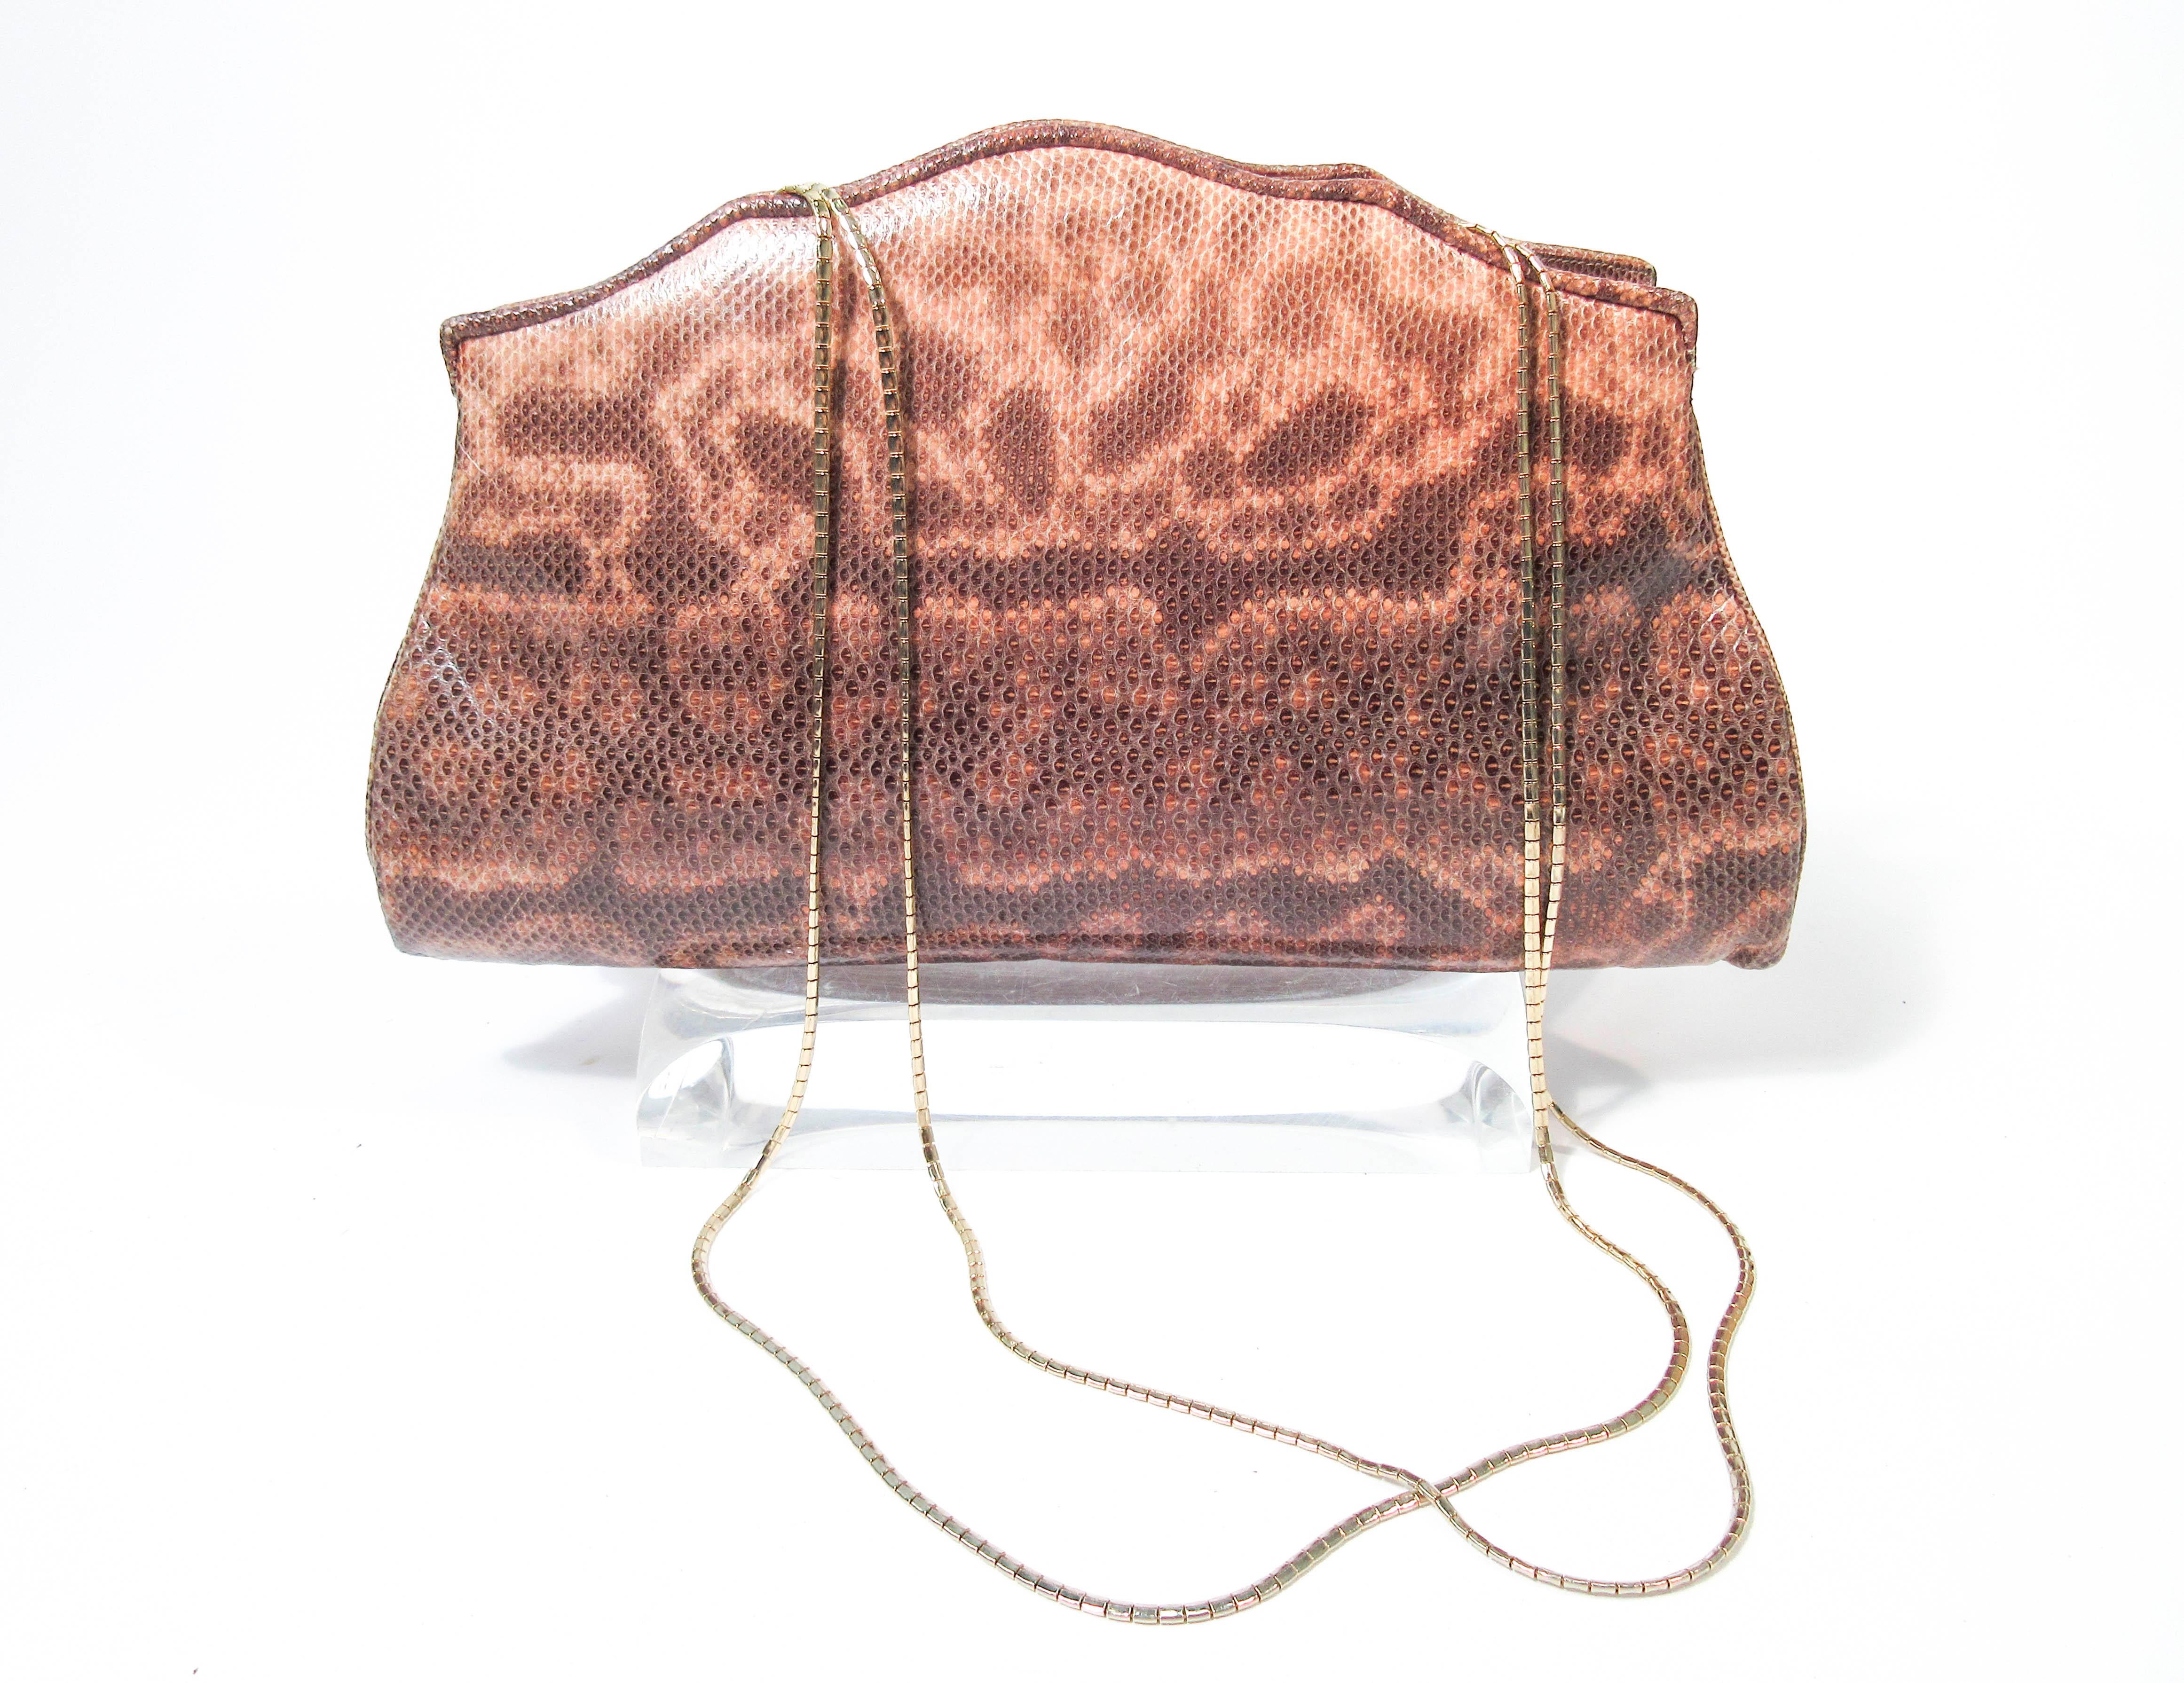 Diese Judith Leiber Handtasche besteht aus einem nudefarbenen bis braunen Eidechsenleder in Ombré-Optik. Mit einem goldenen Innenrahmen und zwei Seitentaschen. Es gibt eine Innentasche und zwei Einschubtaschen. Mit Münzgeldbörse und Schläferbeutel.